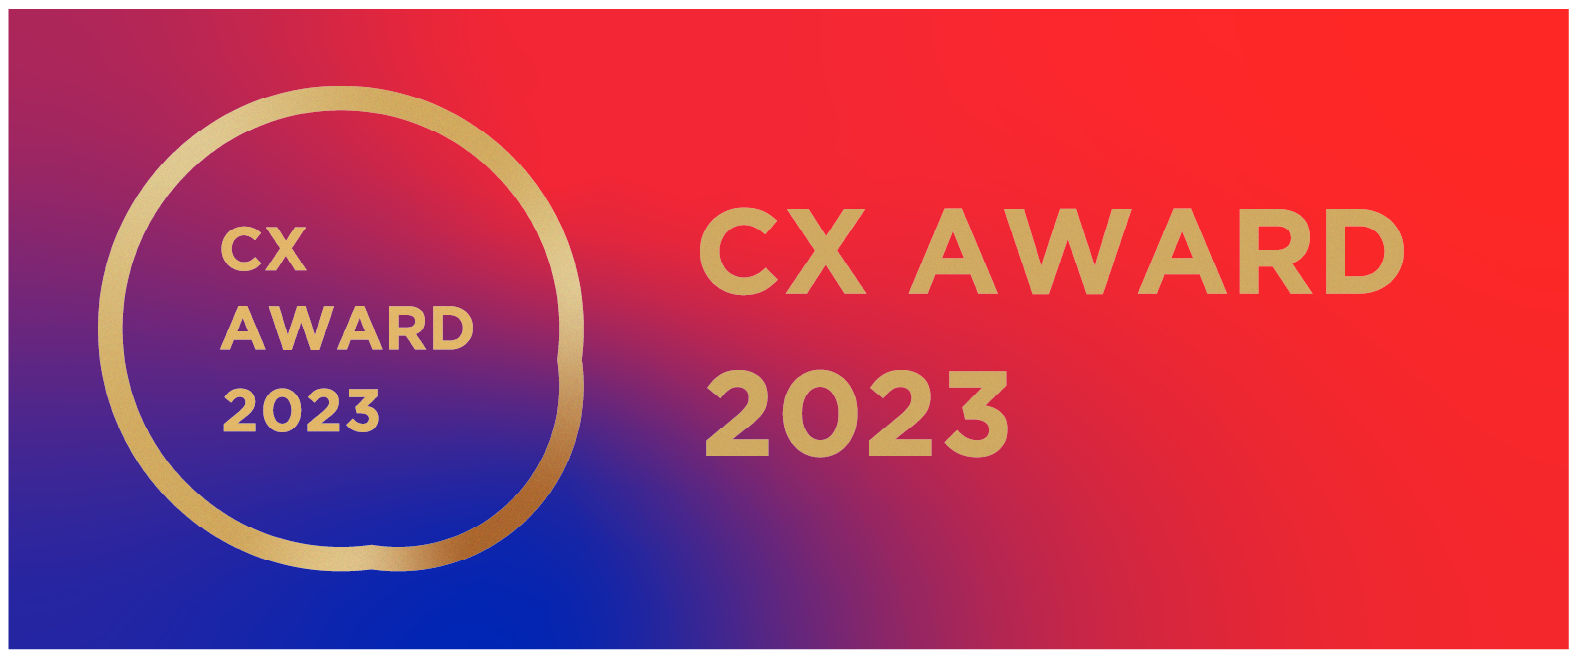 優れた顧客体験を実現できたサービスやプロダクトを表彰する「CX AWARD 2023」受賞発表 #CXAWARD